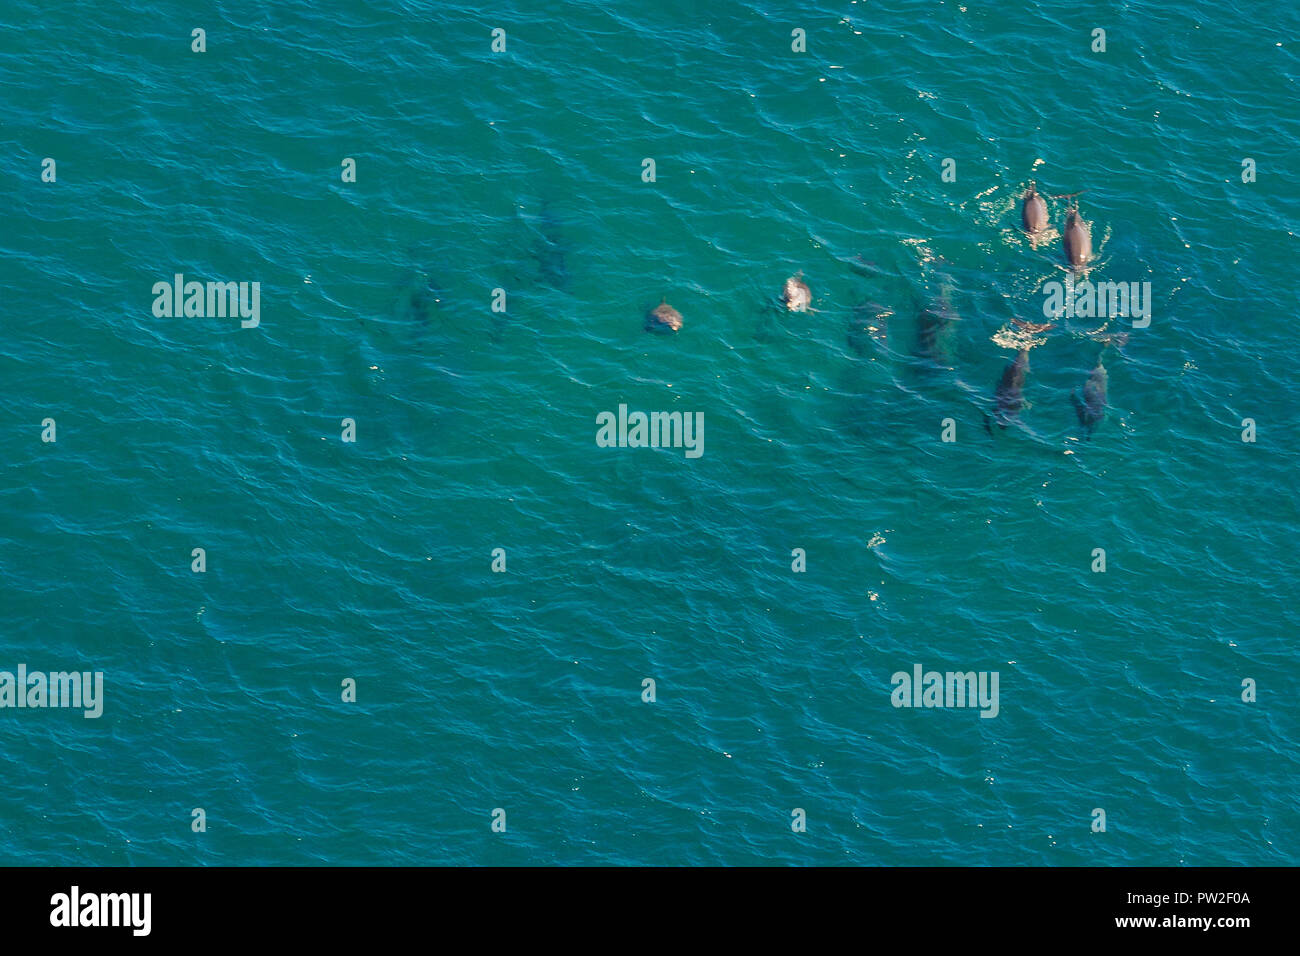 Gruppe der Wale in St. Lucia, Südafrika, eines der besten Safari Destinationen. Luftaufnahme. Whale Watching während der Migration zwischen Juni und November im Winter. Stockfoto